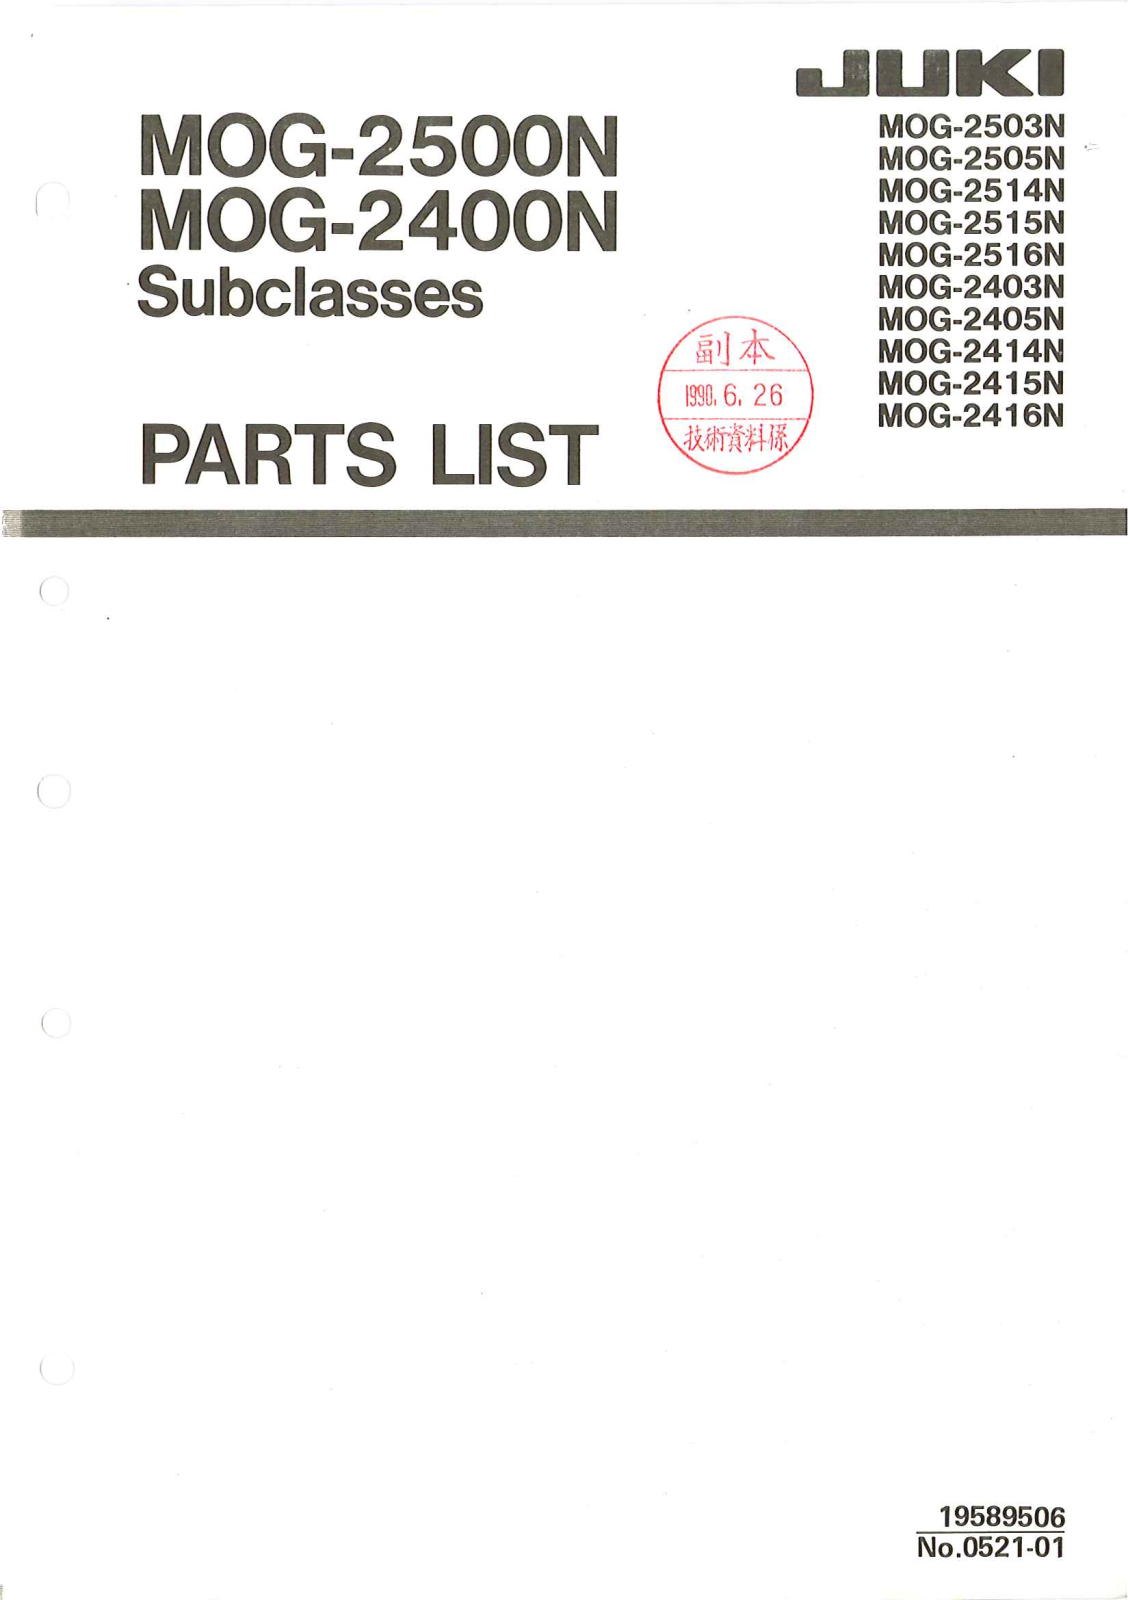 Juki MOG-2403N, MOG-2503N, MOG-2405N, MOG-2414N, MOG-2415N Parts List